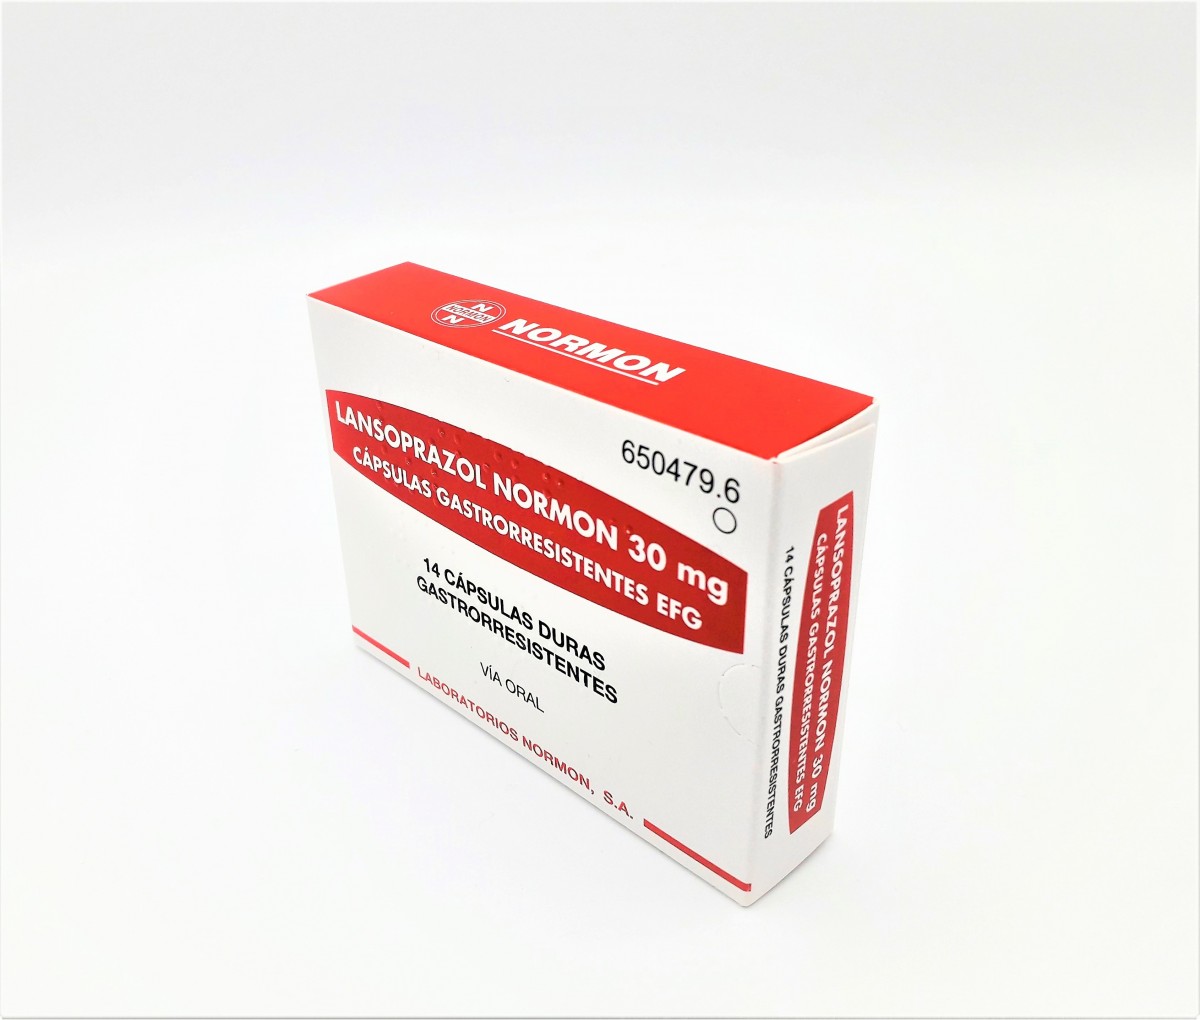 LANSOPRAZOL NORMON 30 mg CAPSULAS GASTRORRESISTENTES EFG, 14 cápsulas fotografía del envase.